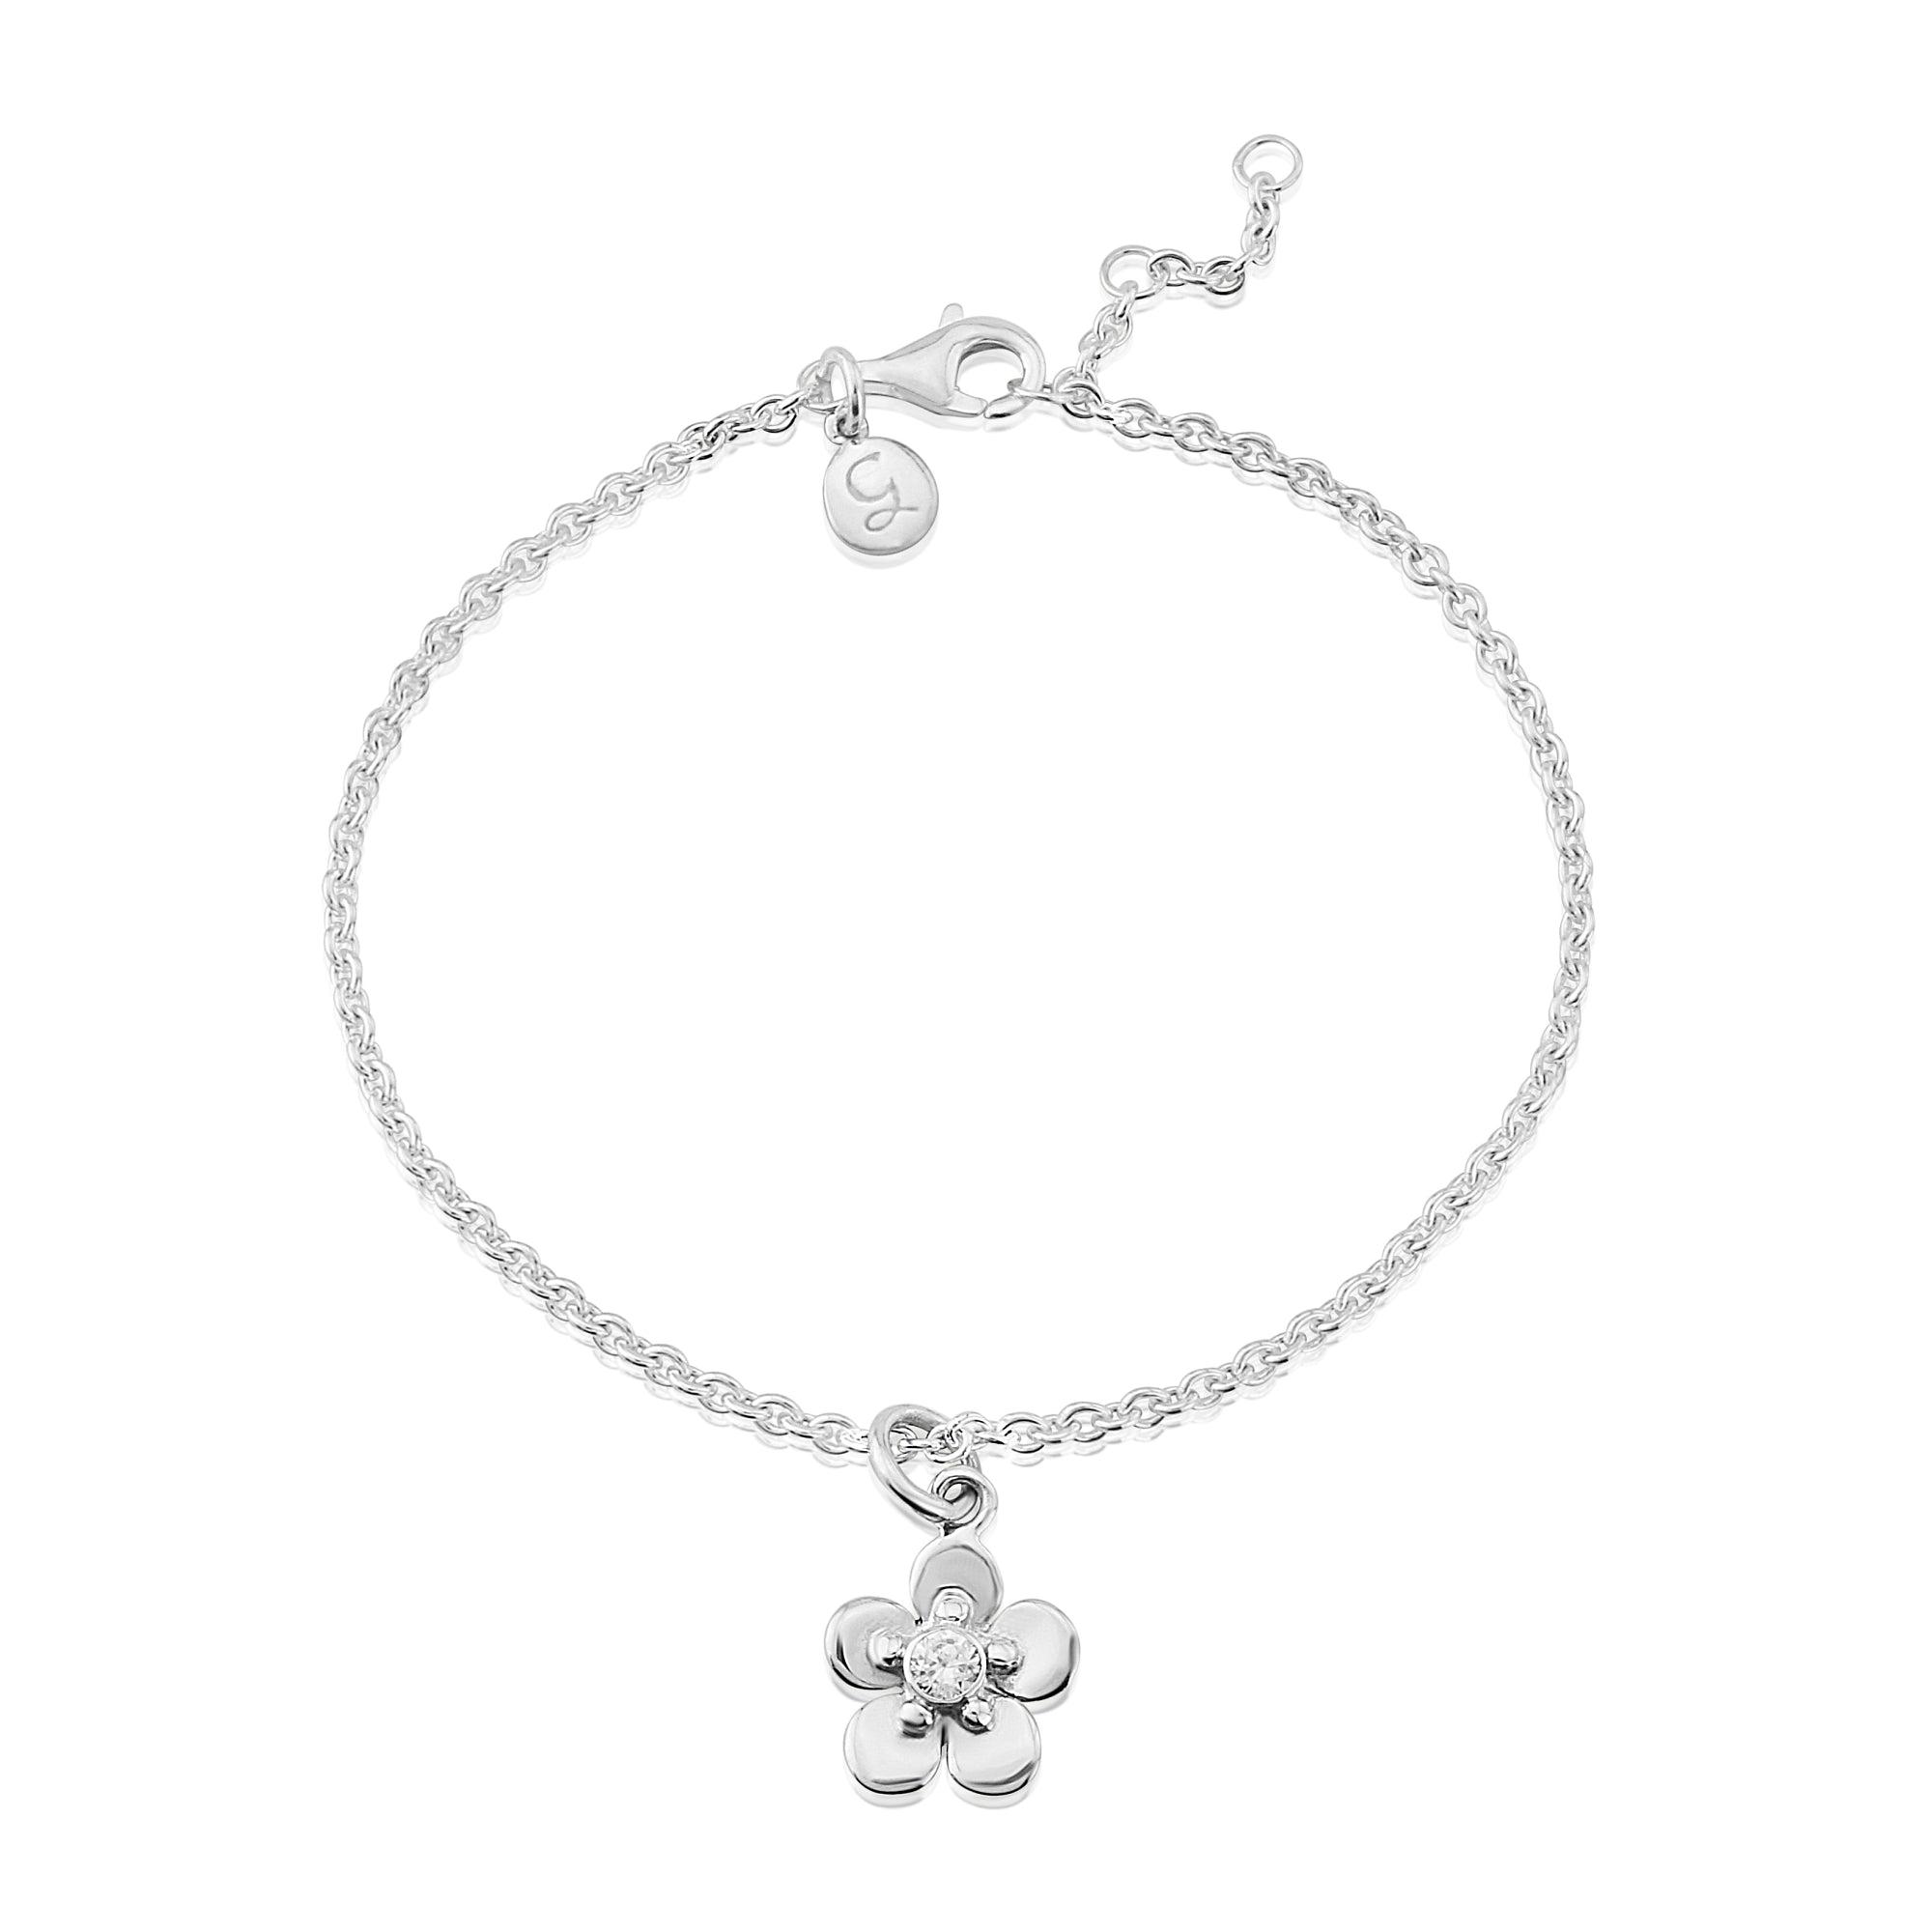 Forget Me Not silver bracelet| Glenna Jewellery Scotland